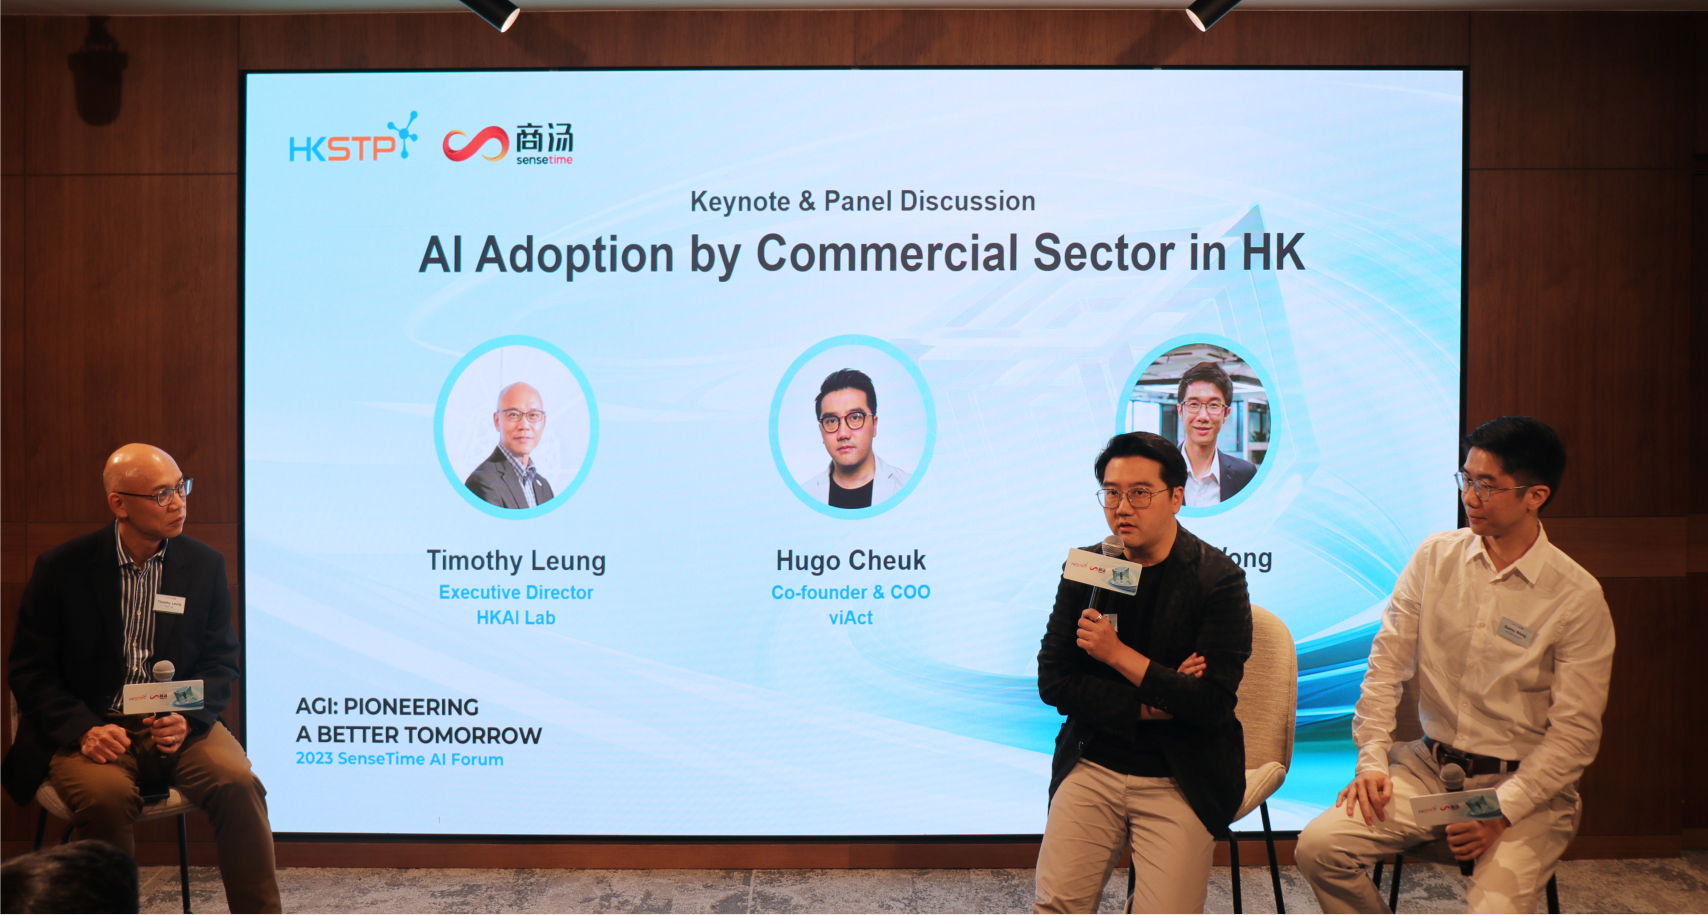 商汤科技携手香港科技园公司合办AI论坛 汇聚行业专家探索 AGI应用潜力